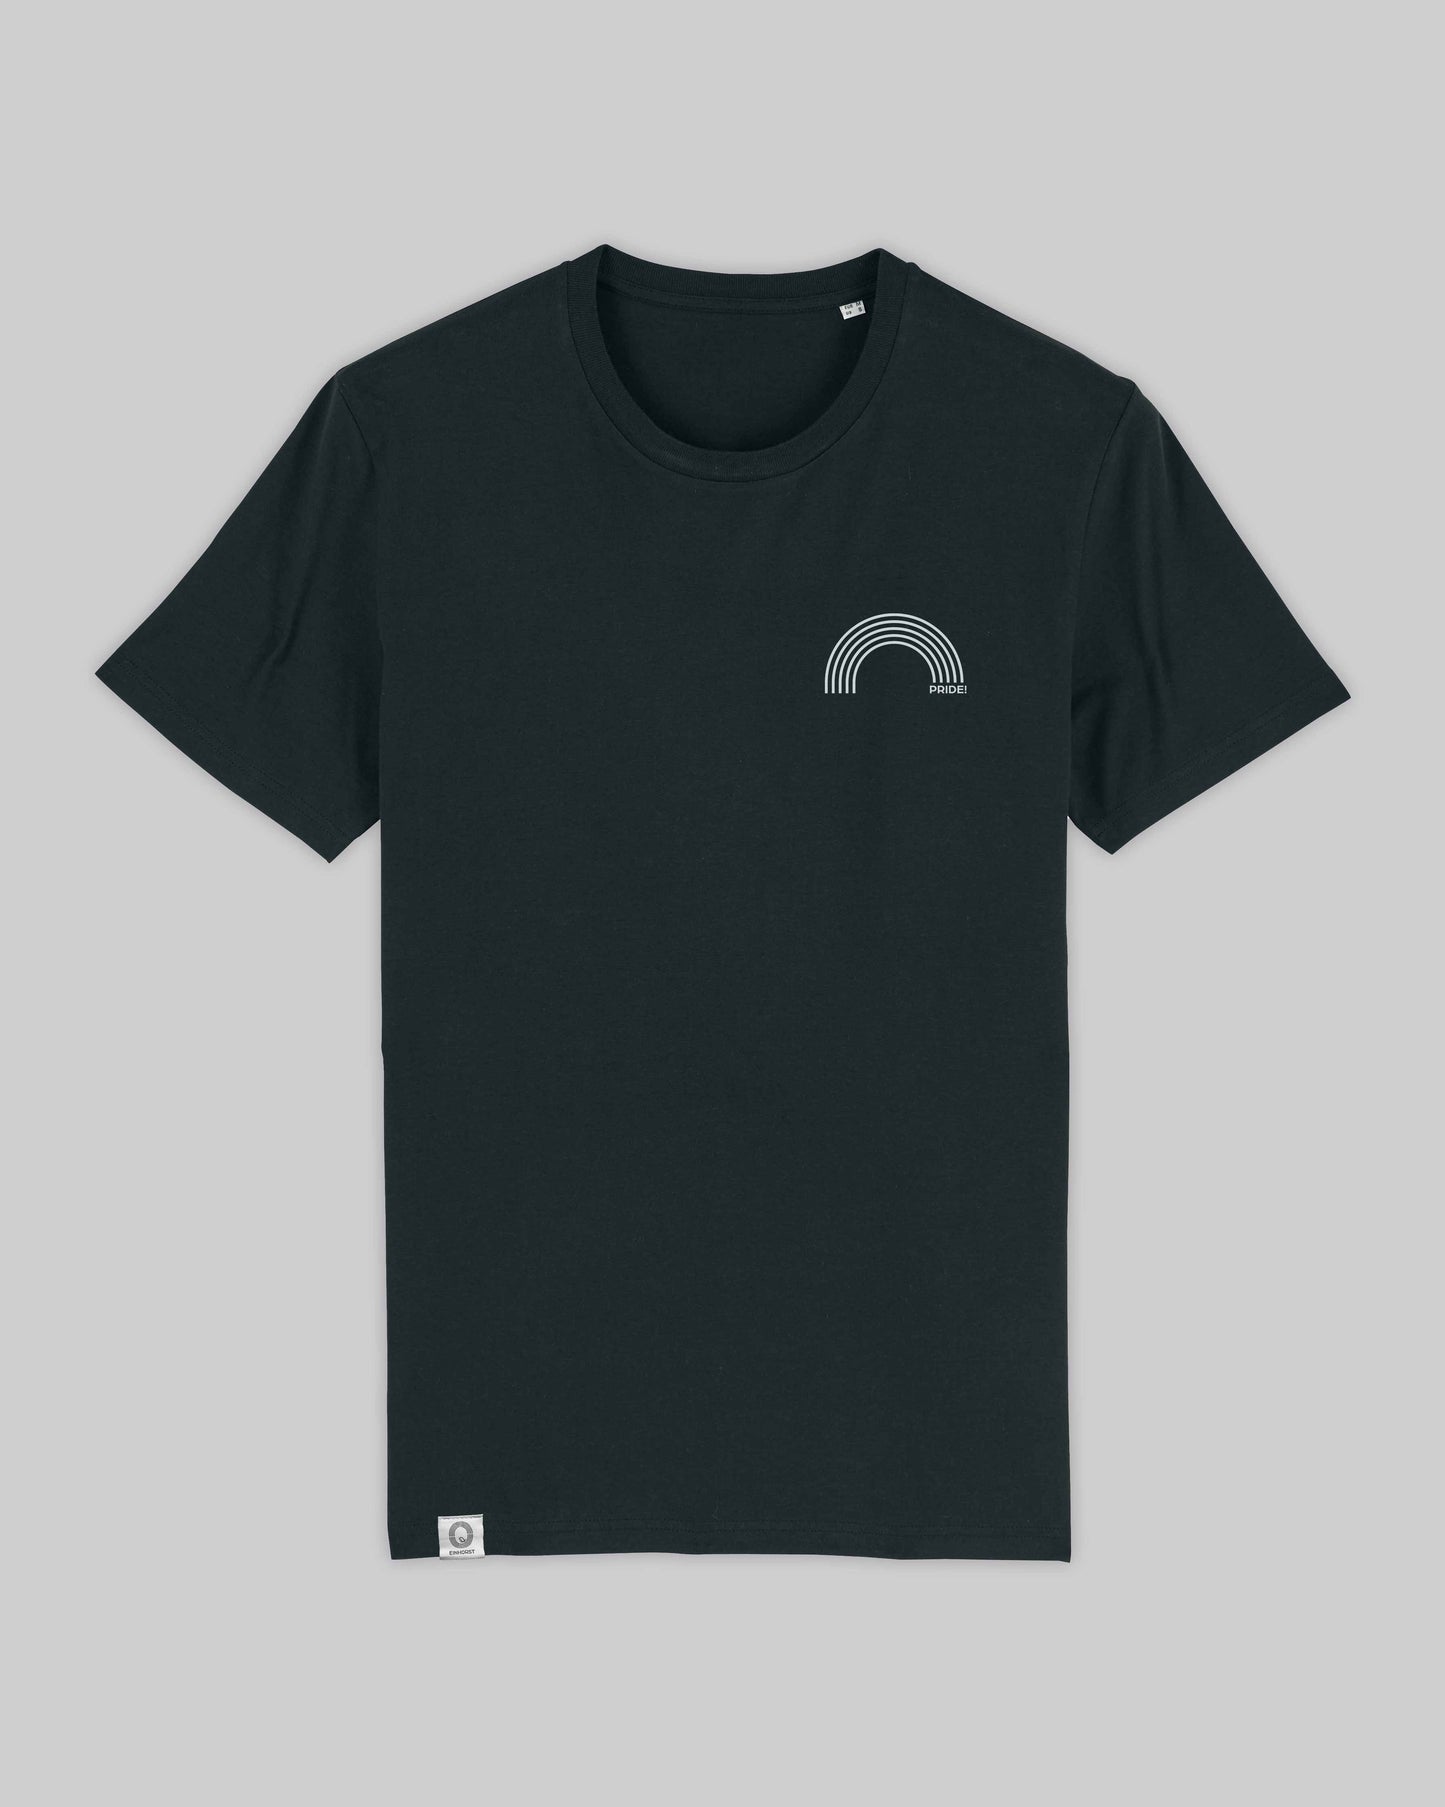 EINHORST® unisex Organic Shirt in Schwarz mit dem Motiv "pride Regenbogen" in der Kombination weißer Regenbogen mit weißer Schrift, Bild von Shirt von vorne